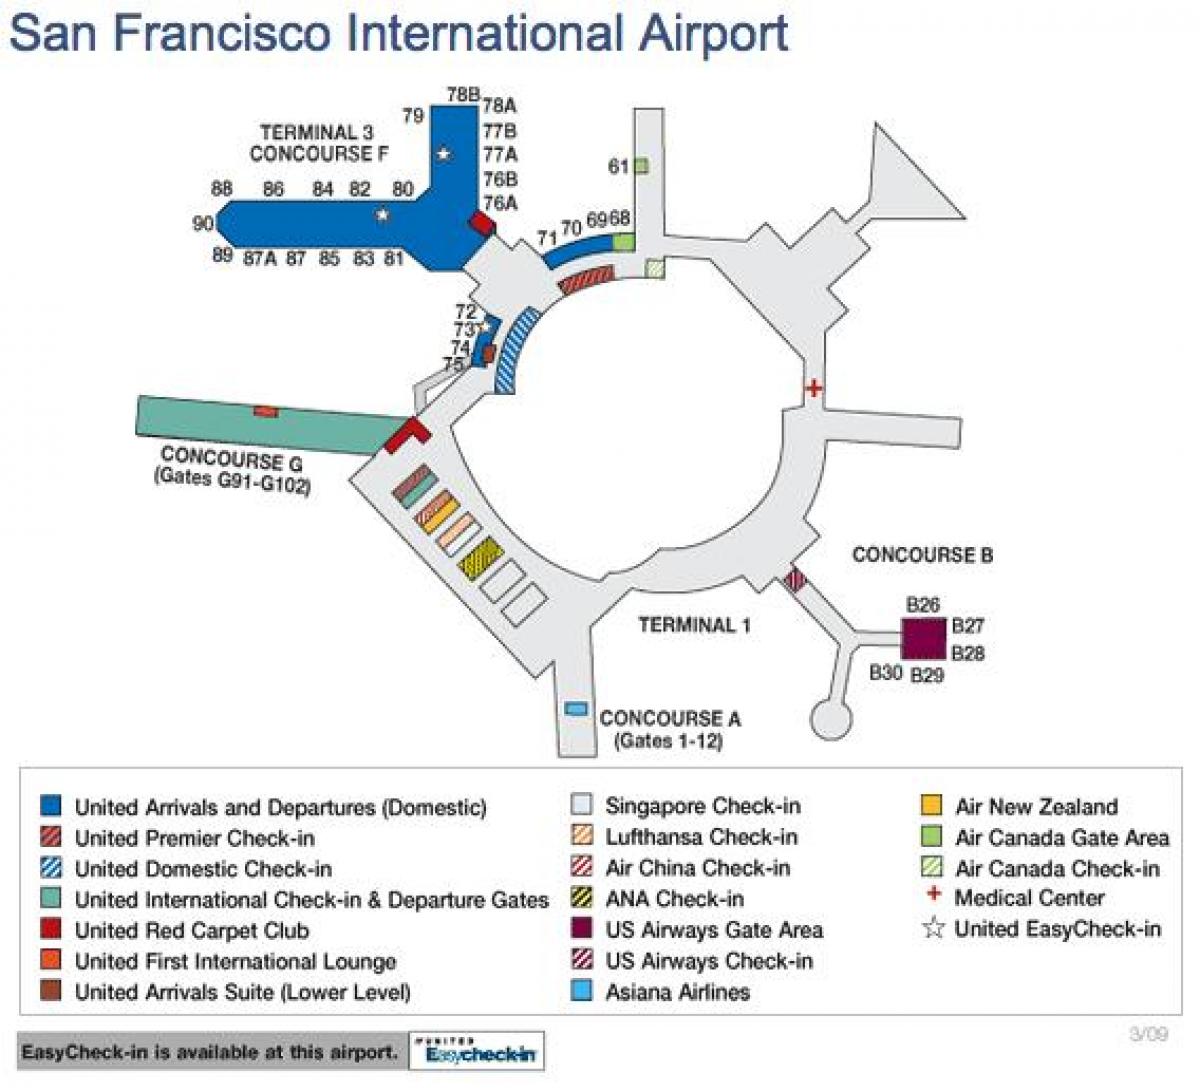 San Francisko aeroporti hartë të bashkuara